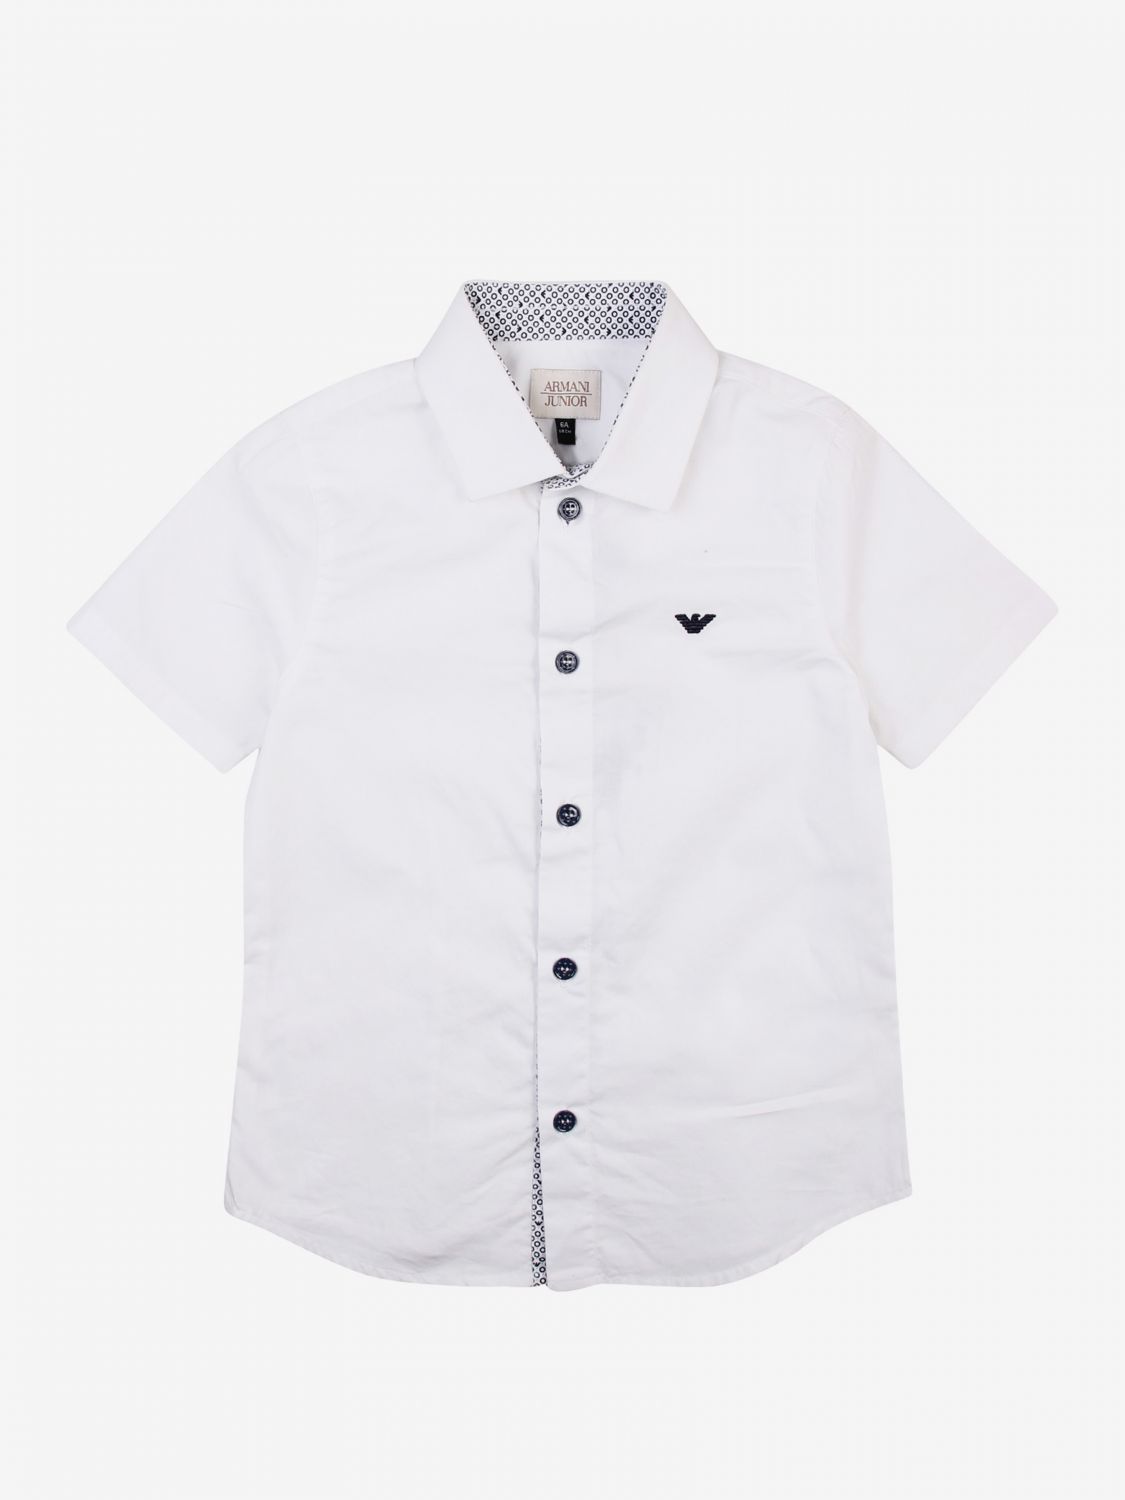 Outlet de Emporio Armani: Camisa para niño, Blanco Camisa Emporio 3y4c15 4n18z en en GIGLIO.COM